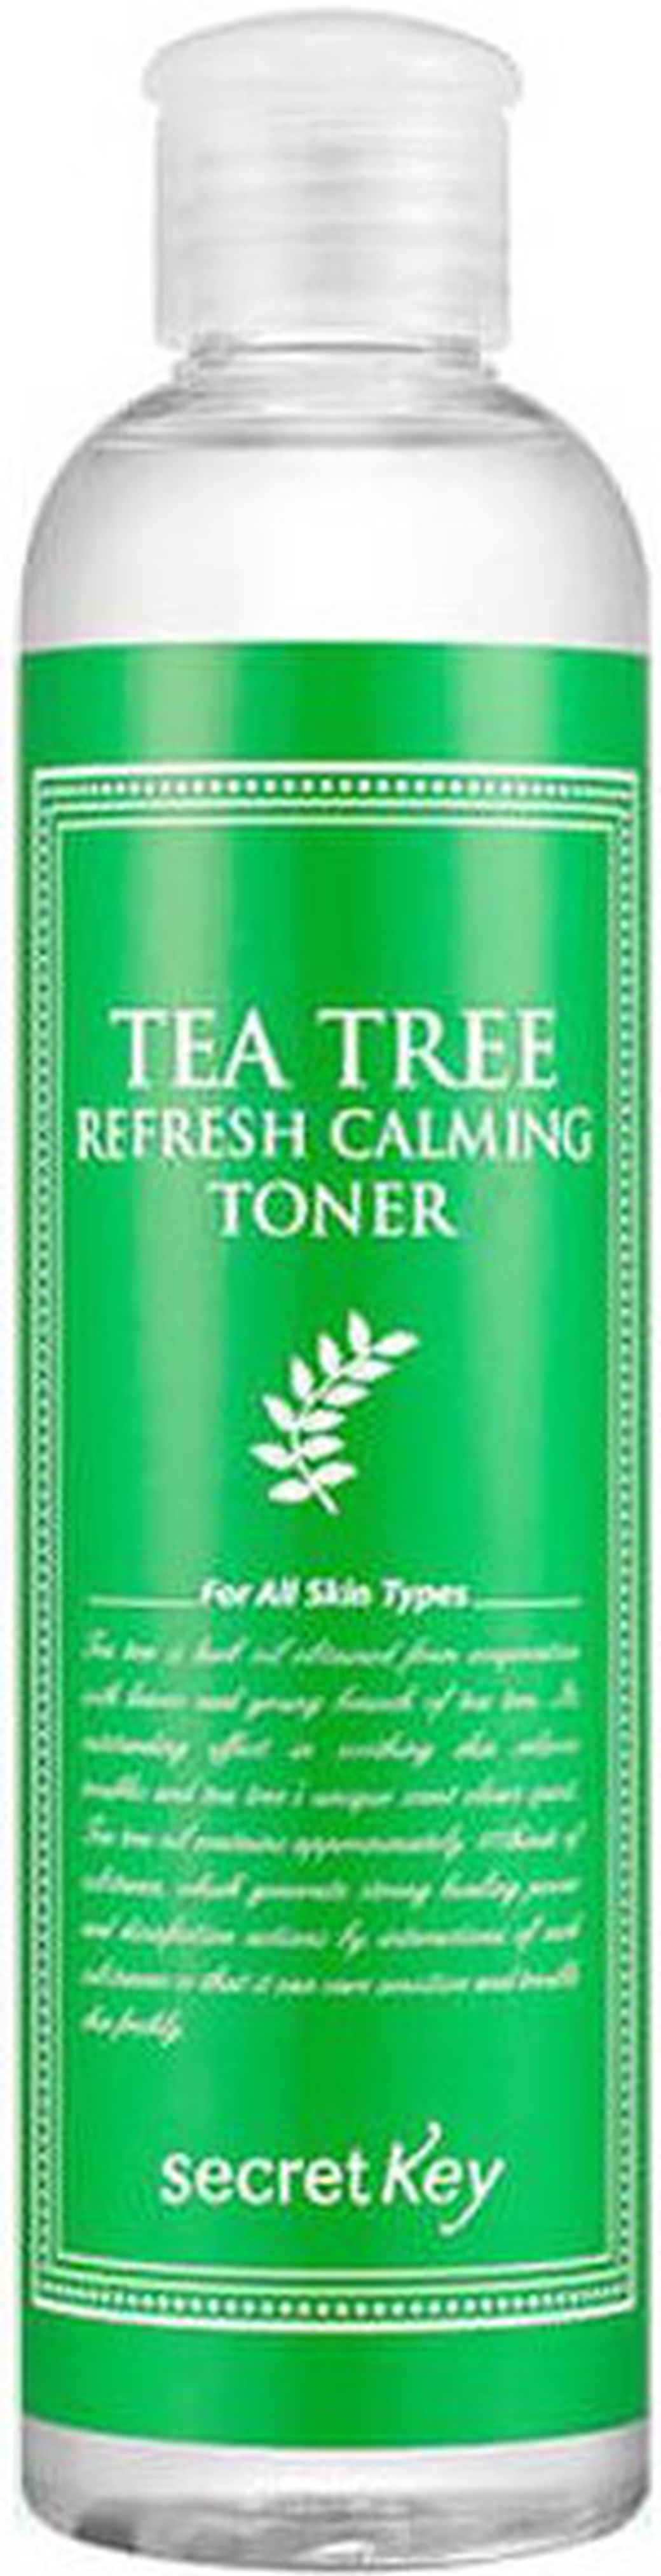 Secret Key Очищающий тоник с маслом чайного дерева для проблемной кожи Tea Tree Refresh Calming Toner фото